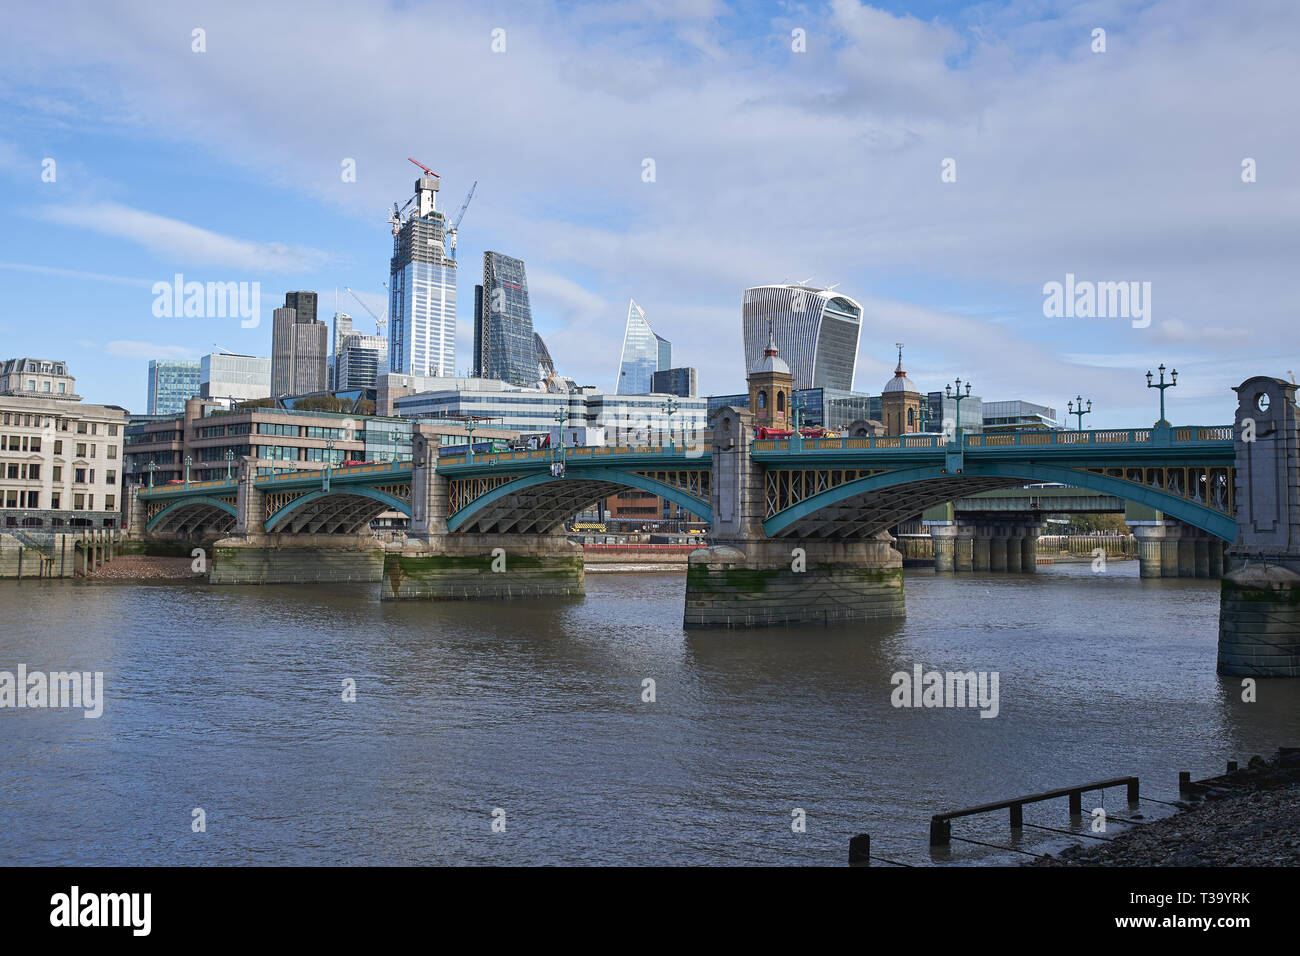 Londres, UK - décembre 2018. De nouveaux gratte-ciel en construction dans la ville, le célèbre quartier financier de Londres. Banque D'Images